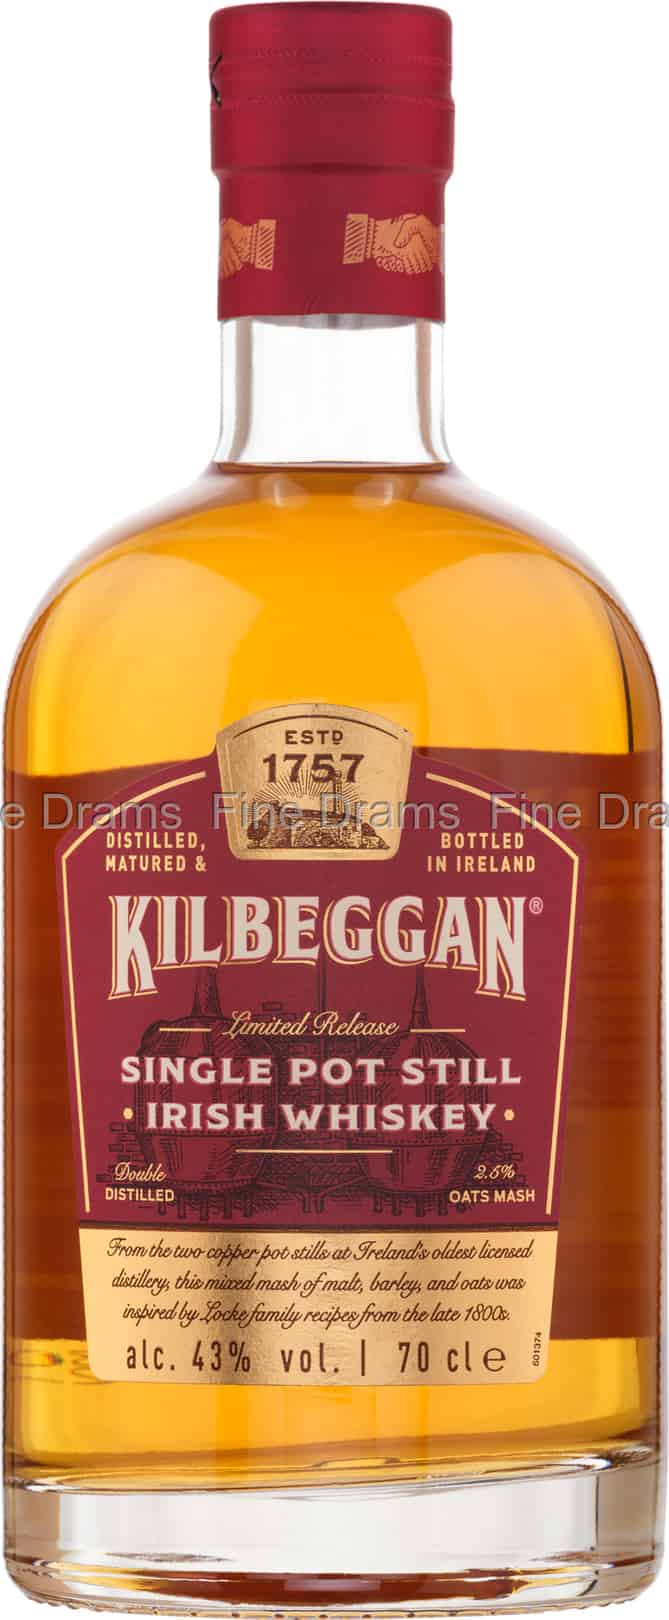 Whiskey Still Kilbeggan Pot Single